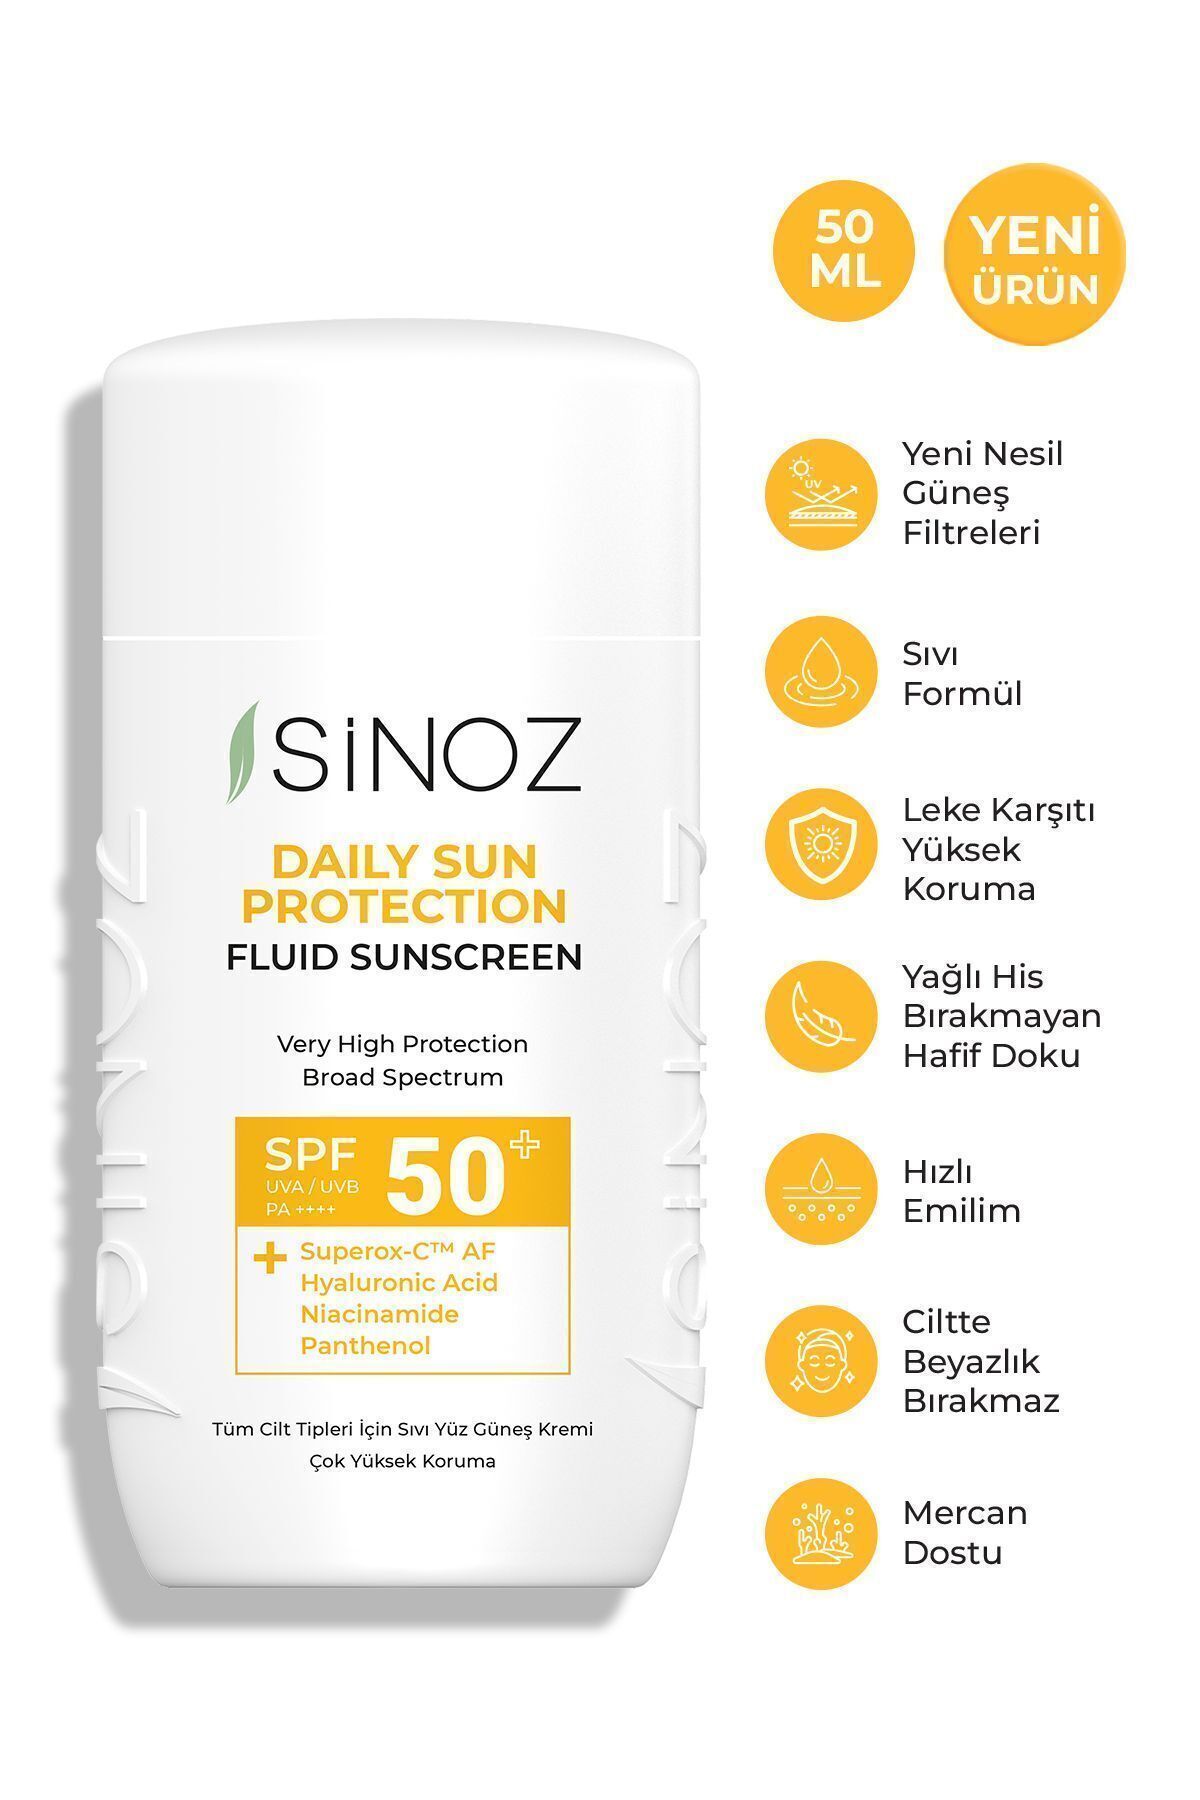 Sinoz Spf50 Günlük Kullanım Sıvı Yüz Güneş Kremi - Yeni Nesil Güneş Filtreleri Ile Hibrit Formül 50ml